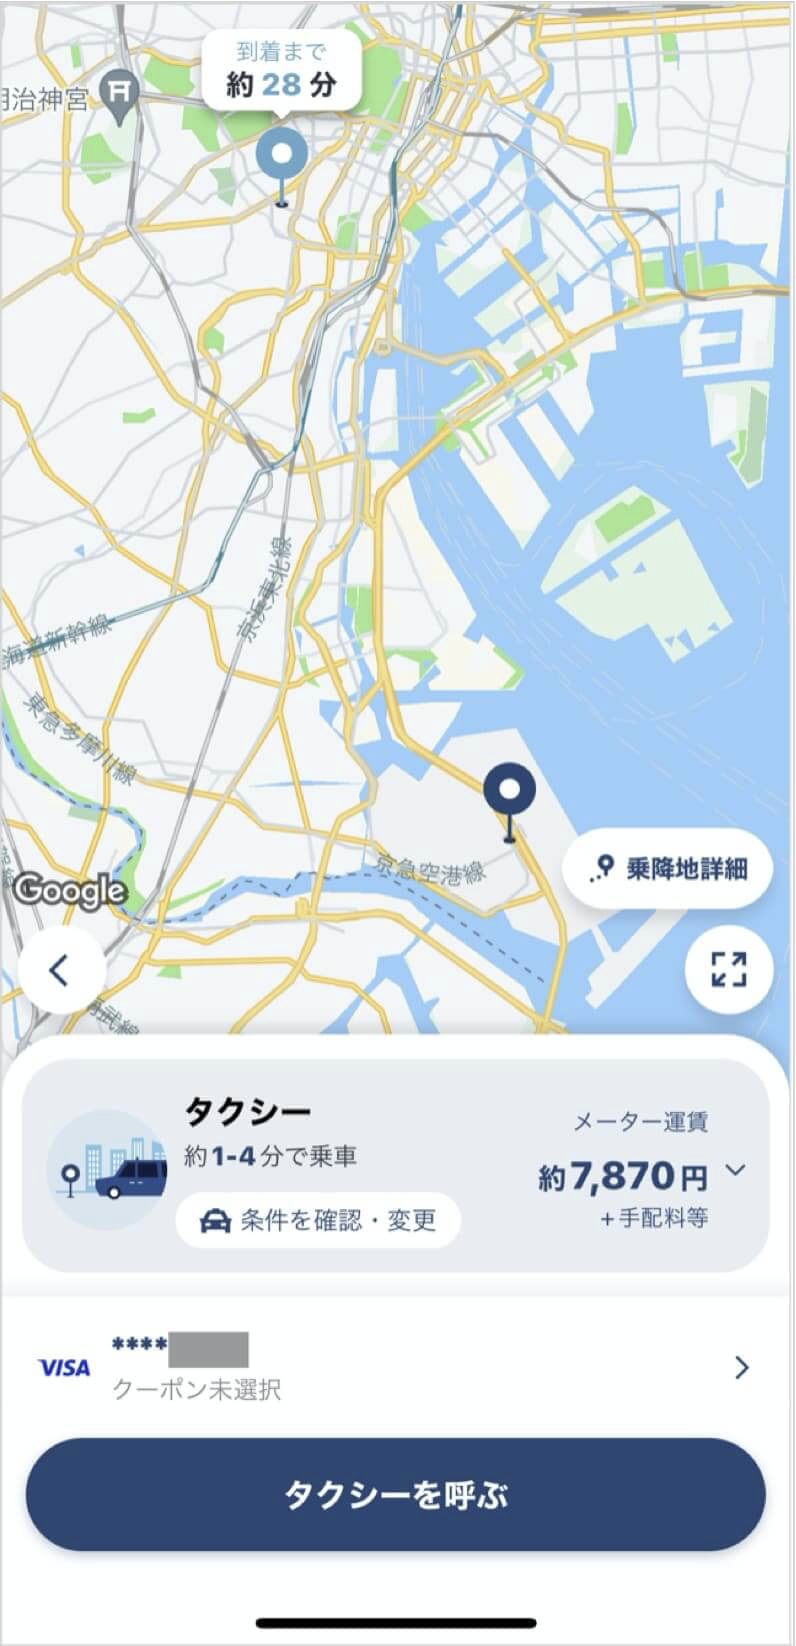 羽田空港から六本木までのタクシー料金・所要時間まとめ